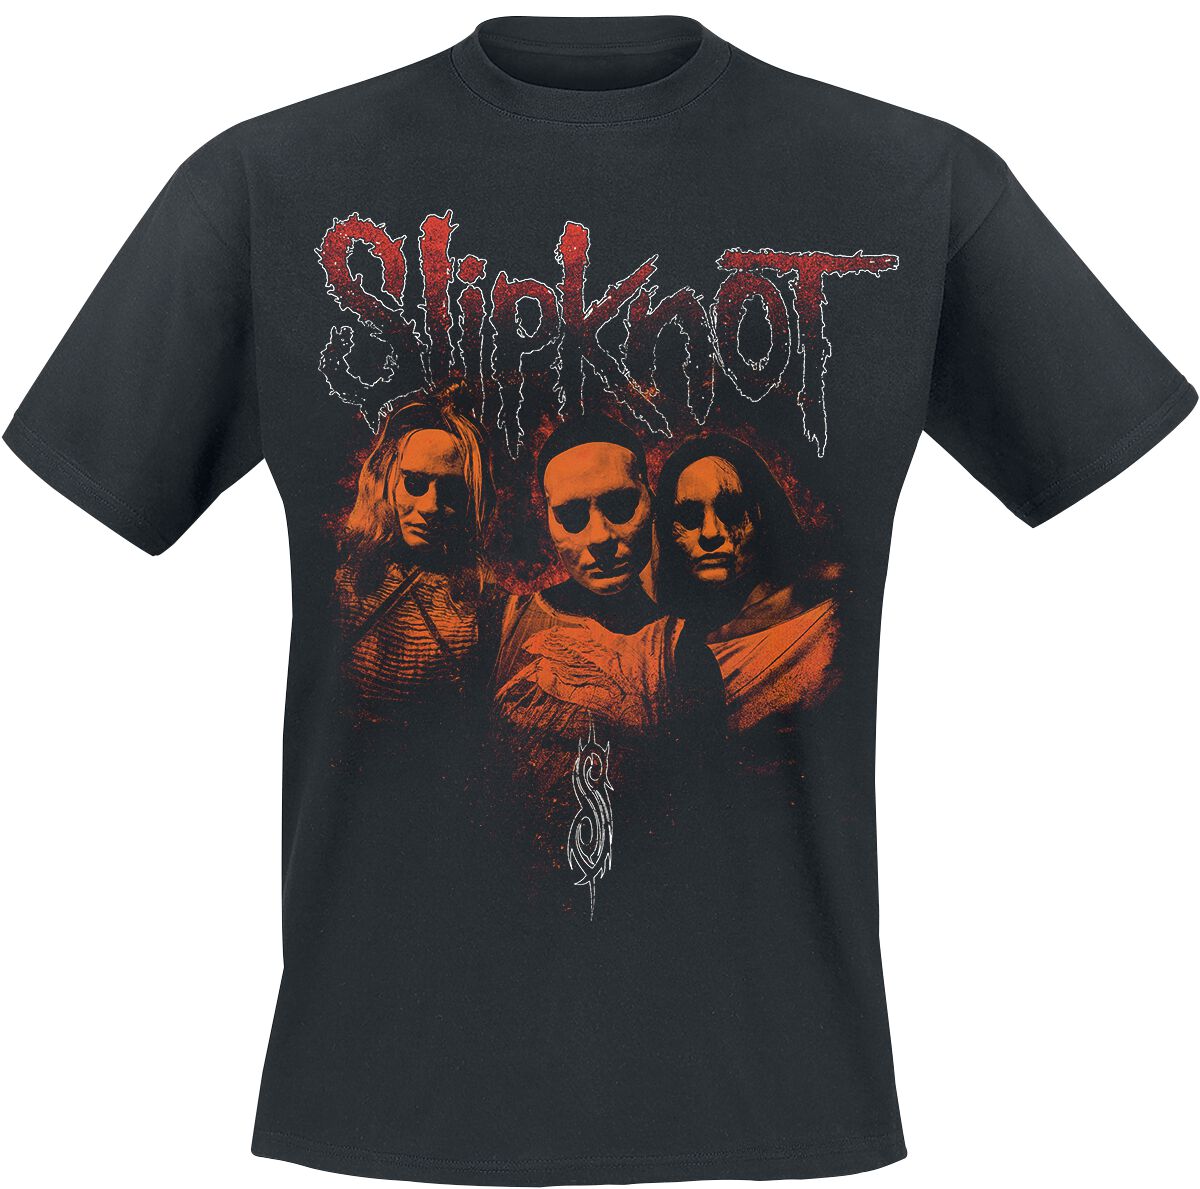 Slipknot T-Shirt - When My Death Begins - S bis XL - für Männer - Größe XL - schwarz  - Lizenziertes Merchandise!